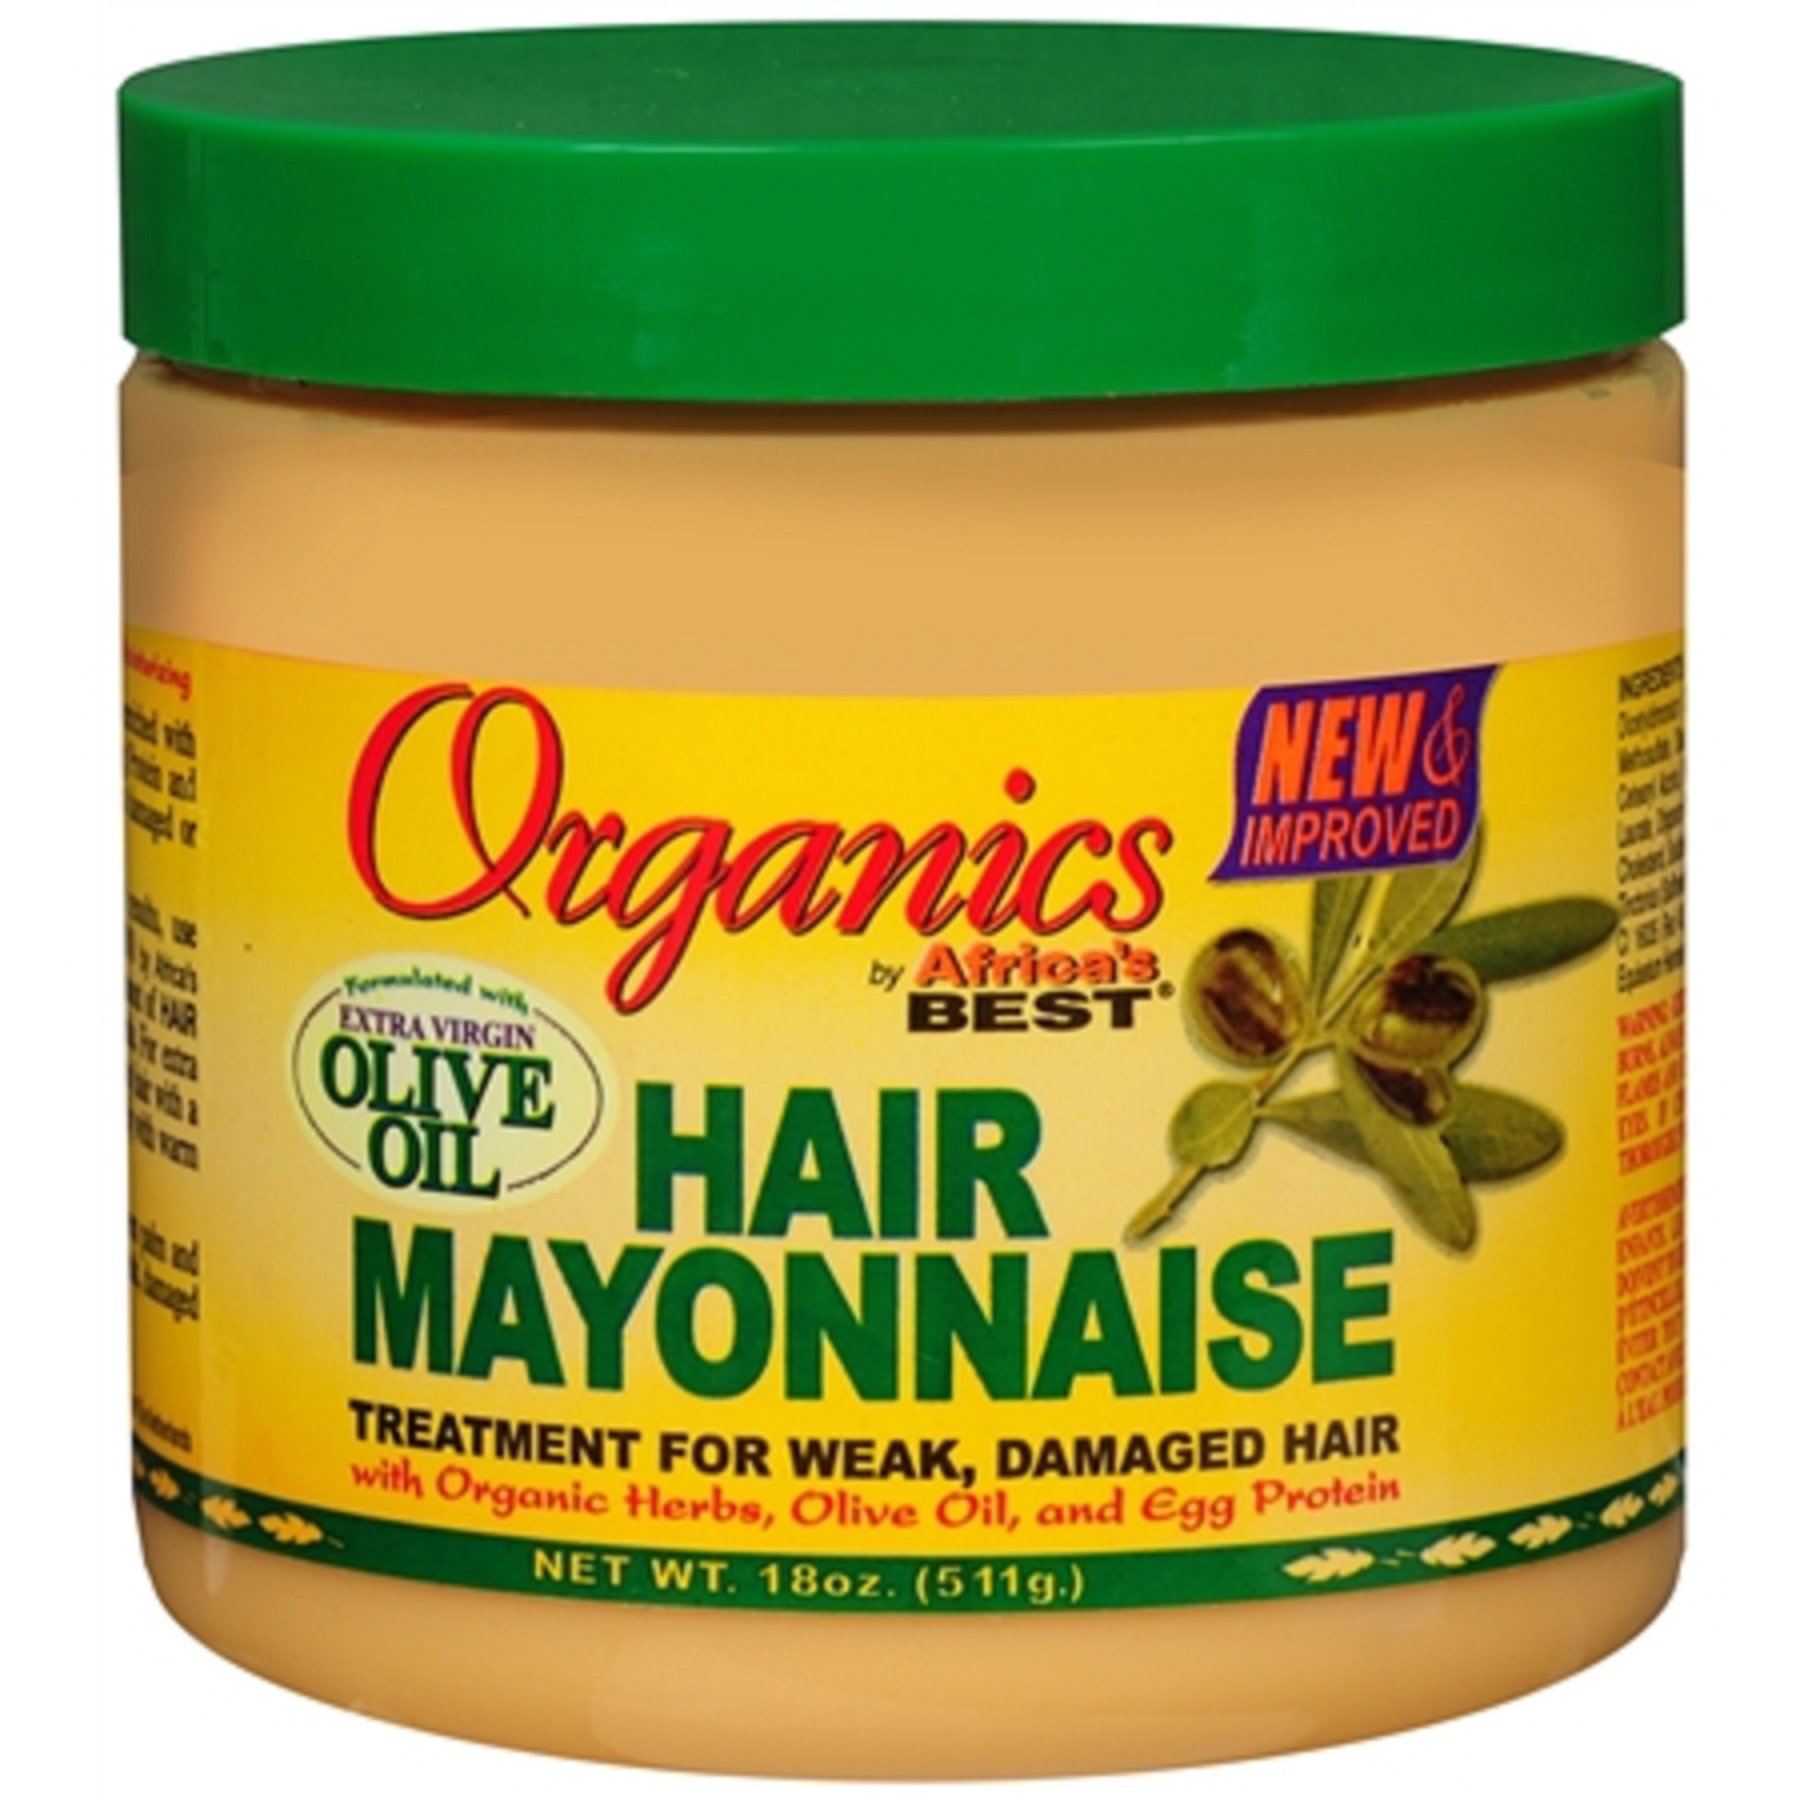 Africa’s Best Hair Mayonnaise